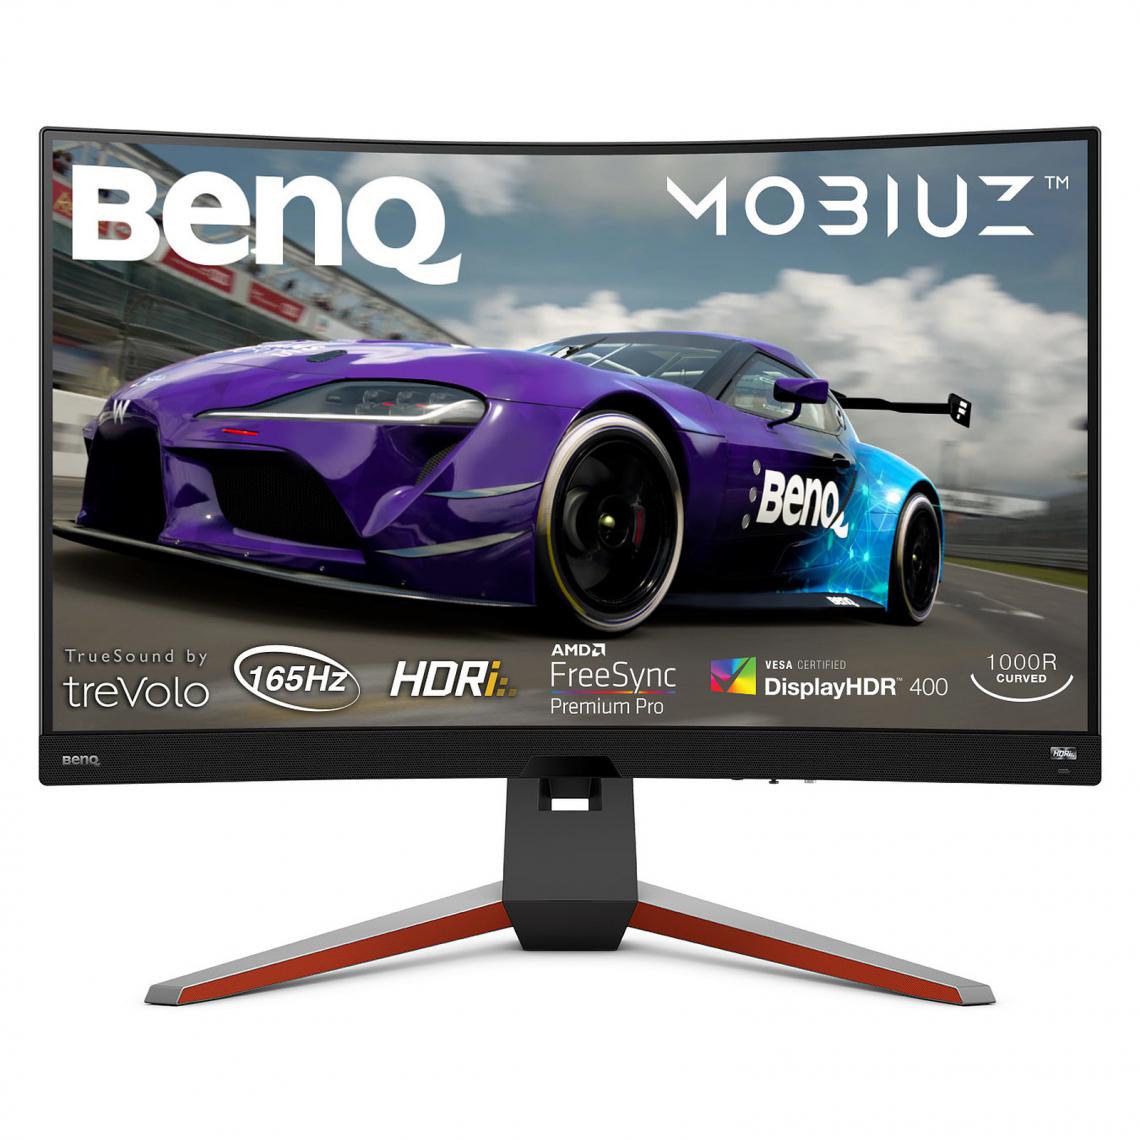 Benq - BENQ MOBIUZ EX3210R - ÉCRAN LED - INCURVÉ - 32" - HDR - Moniteur PC